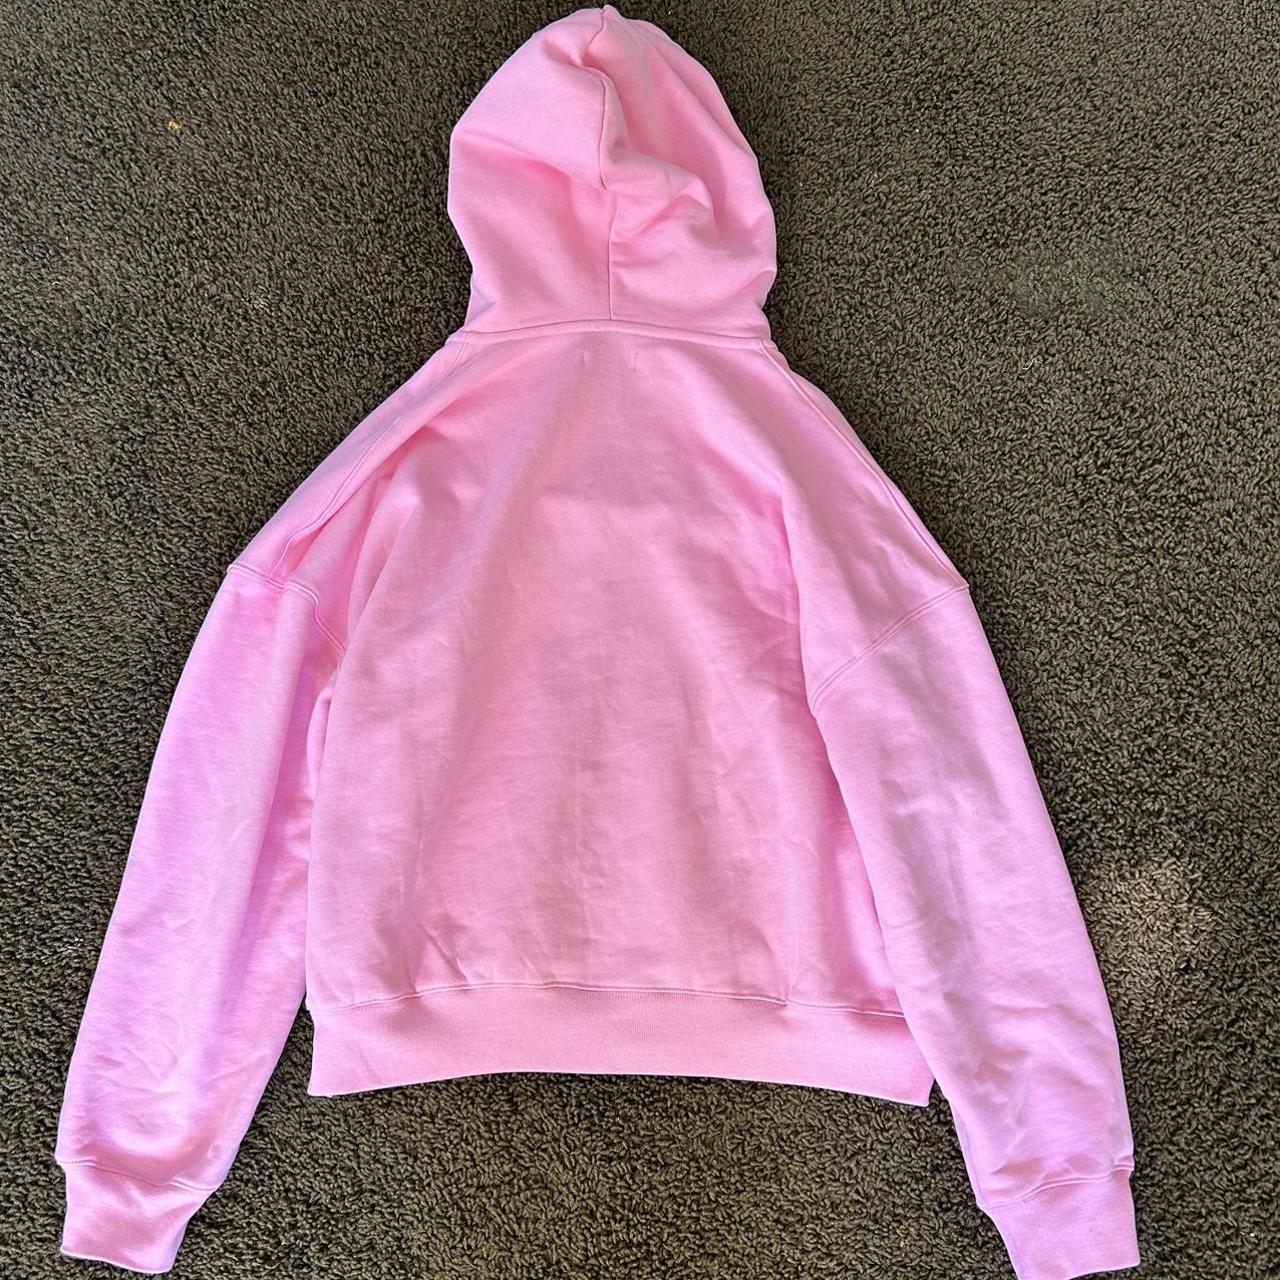 Ihp pink army hoodie - Depop